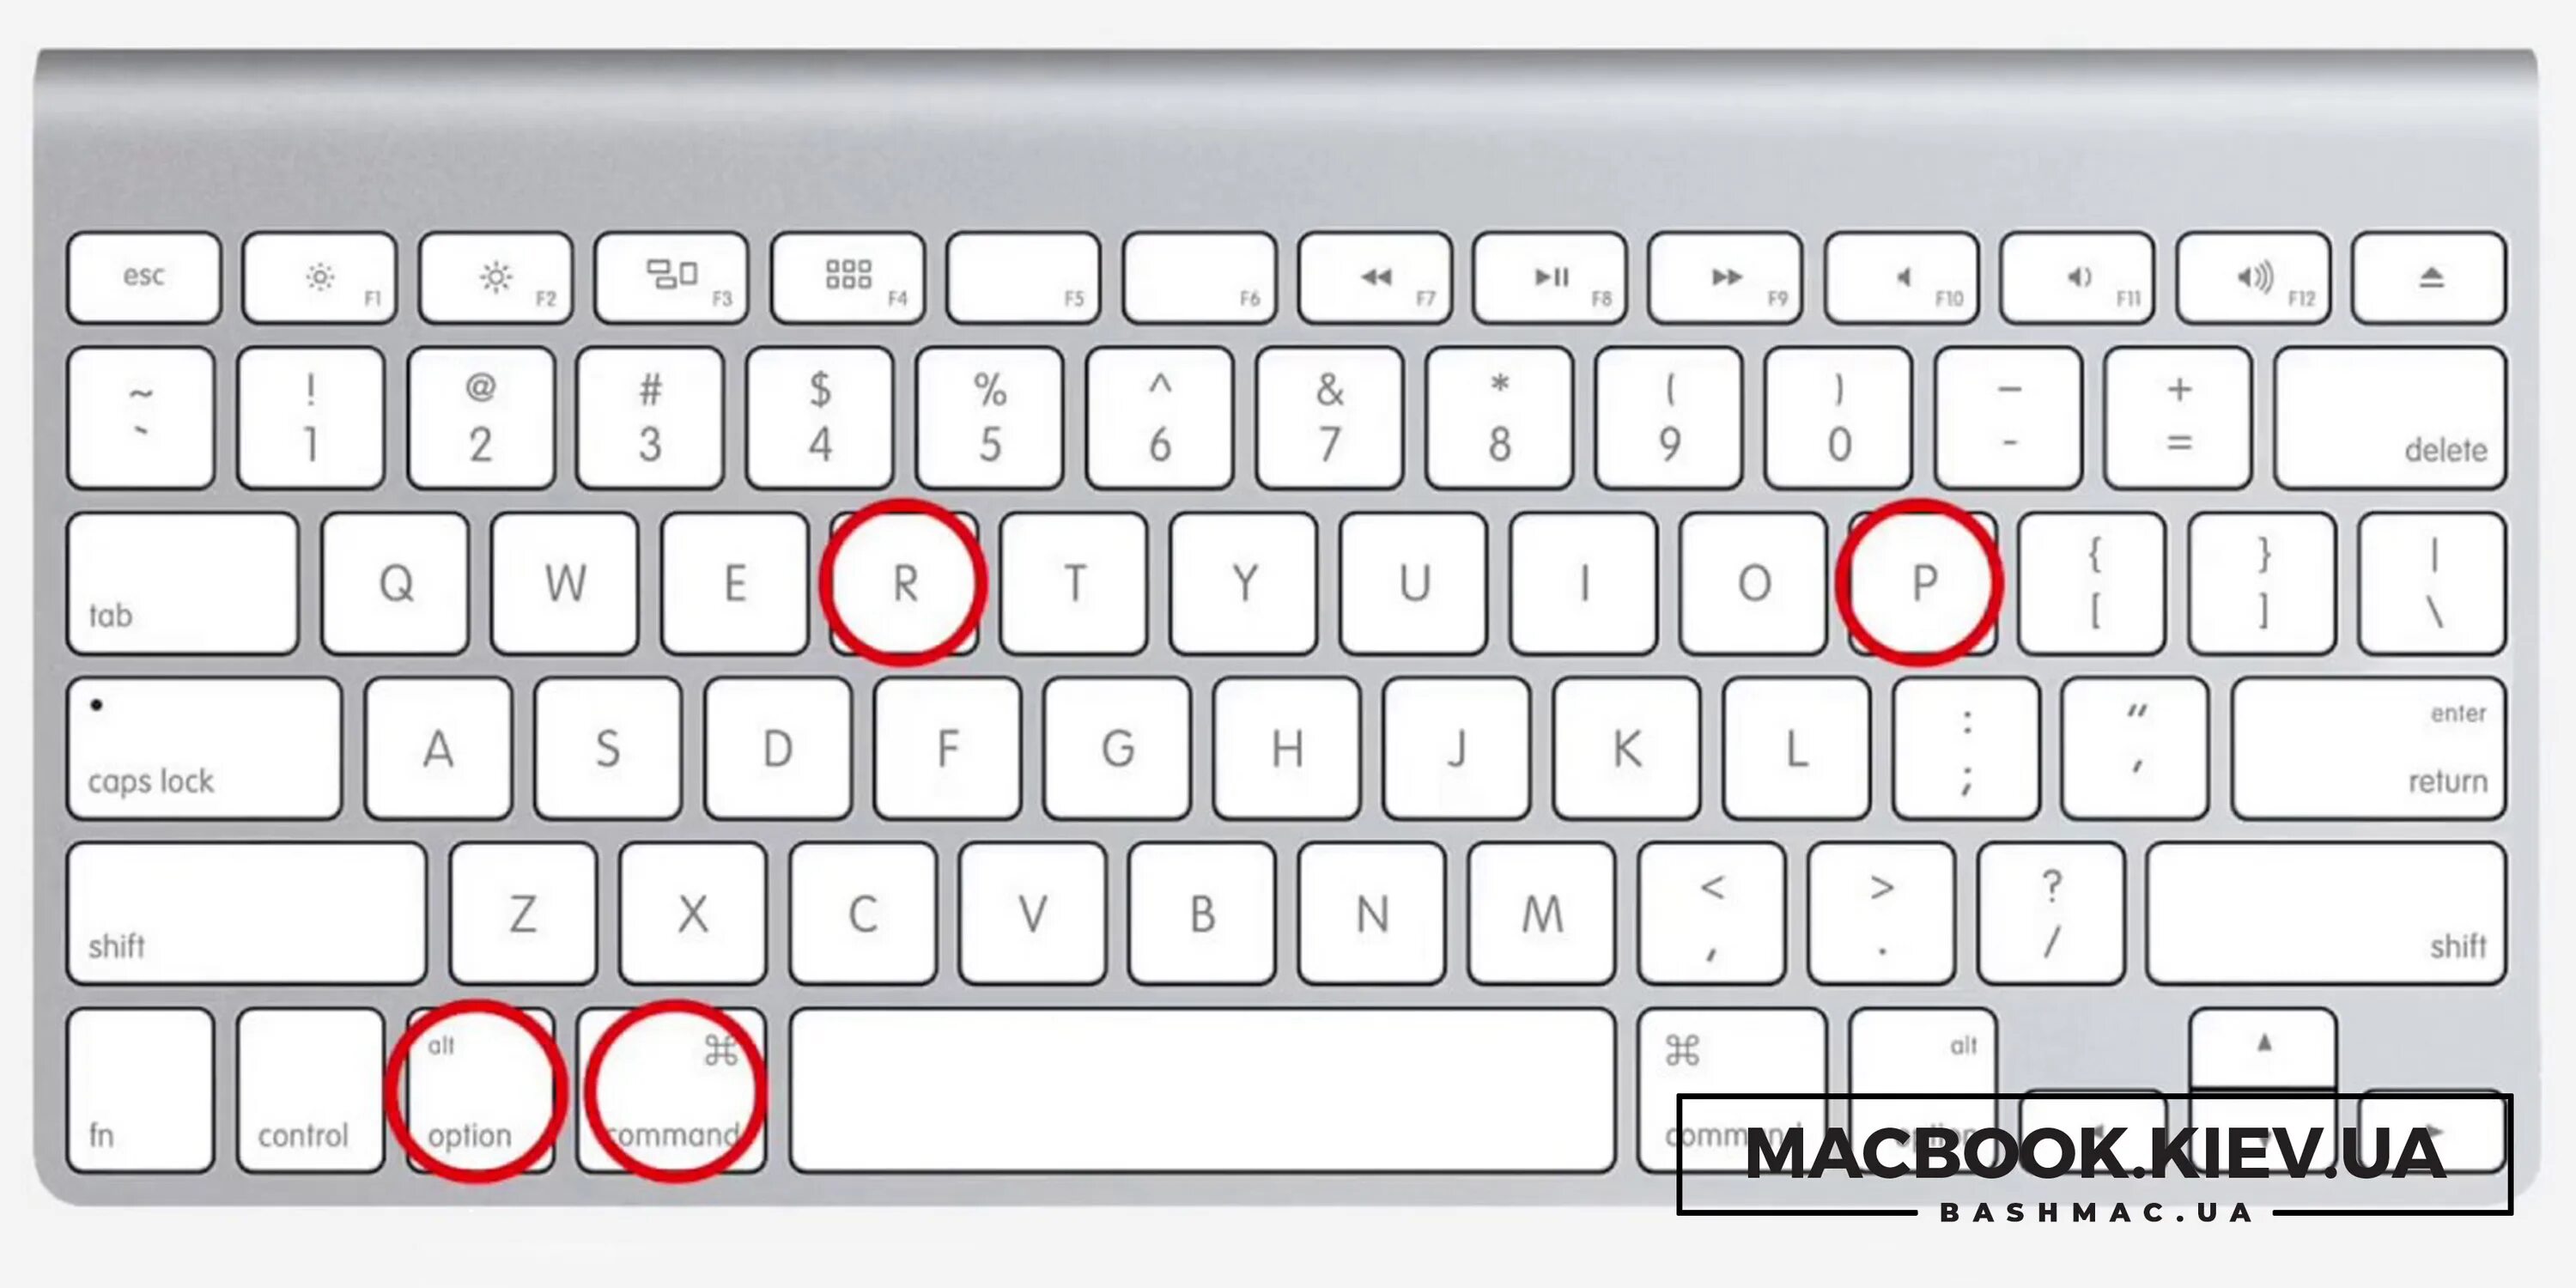 Как поставить знак менее на клавиатуре. Скриншот на маке. Скриншот на MACBOOK. Клавиатура компьютера на экран. Скрин экрана на макбуке.